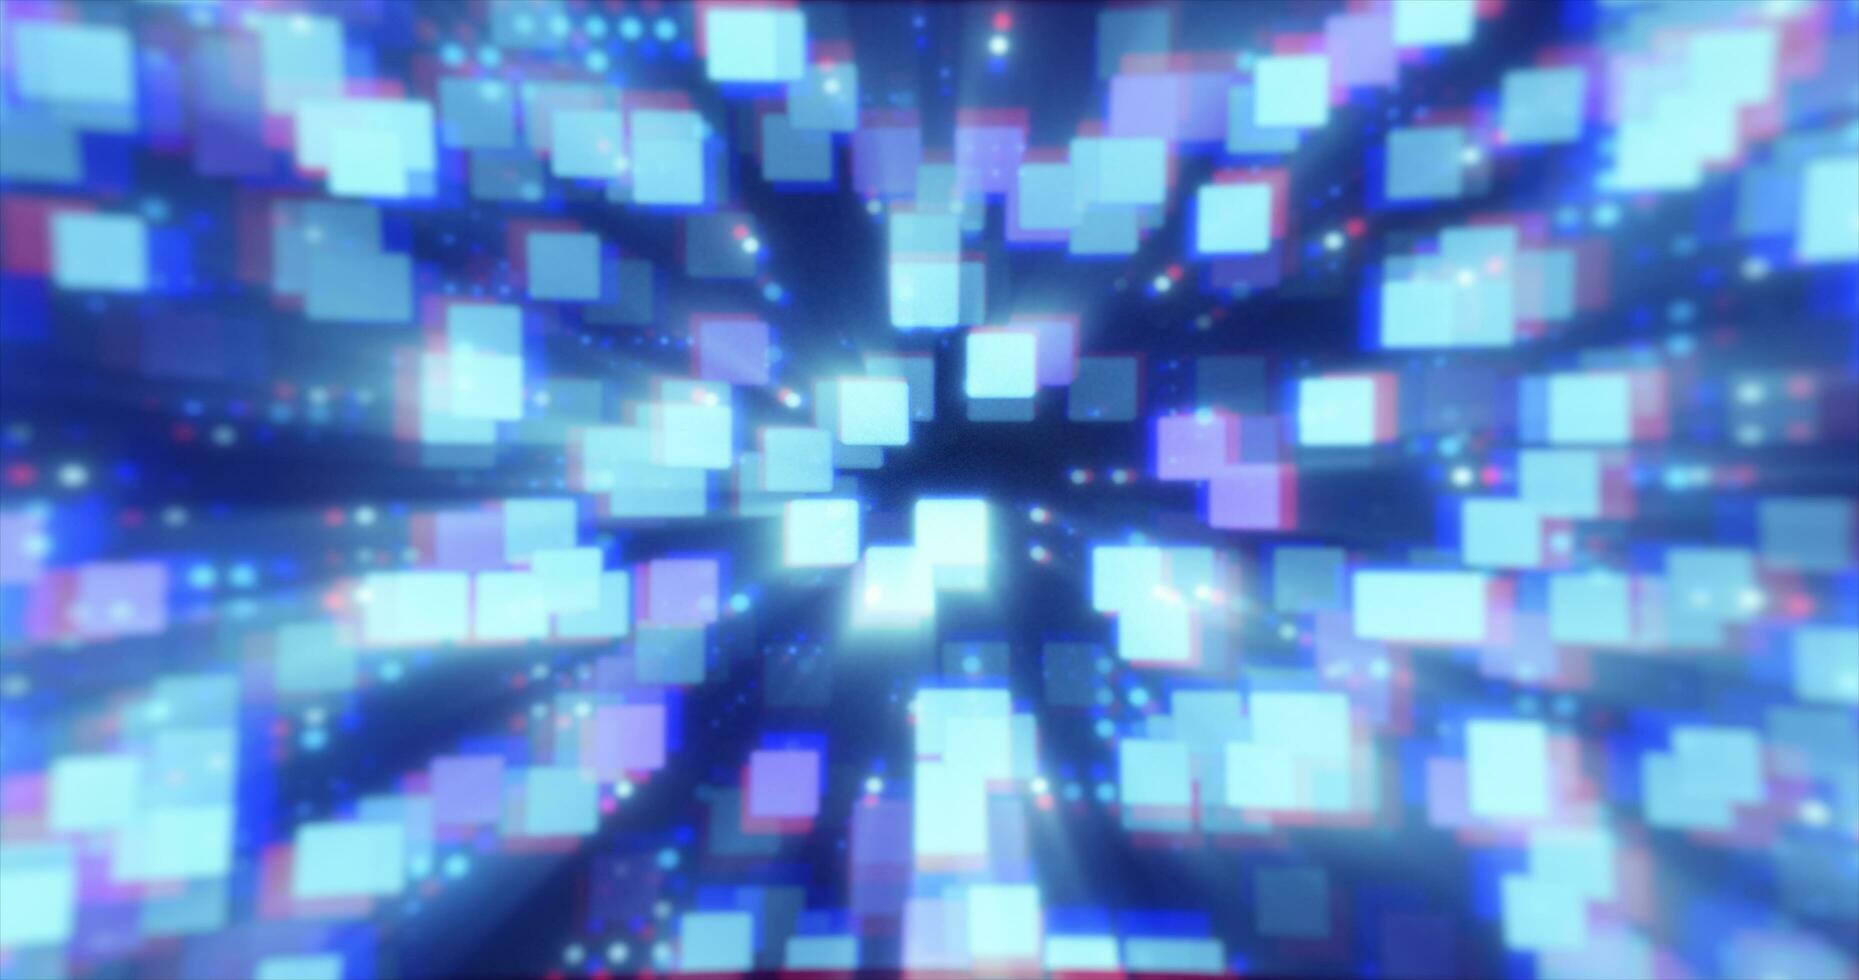 abstrato azul futurista oi-tech energia partículas pontos e quadrados mágico brilhante brilhando fundo foto